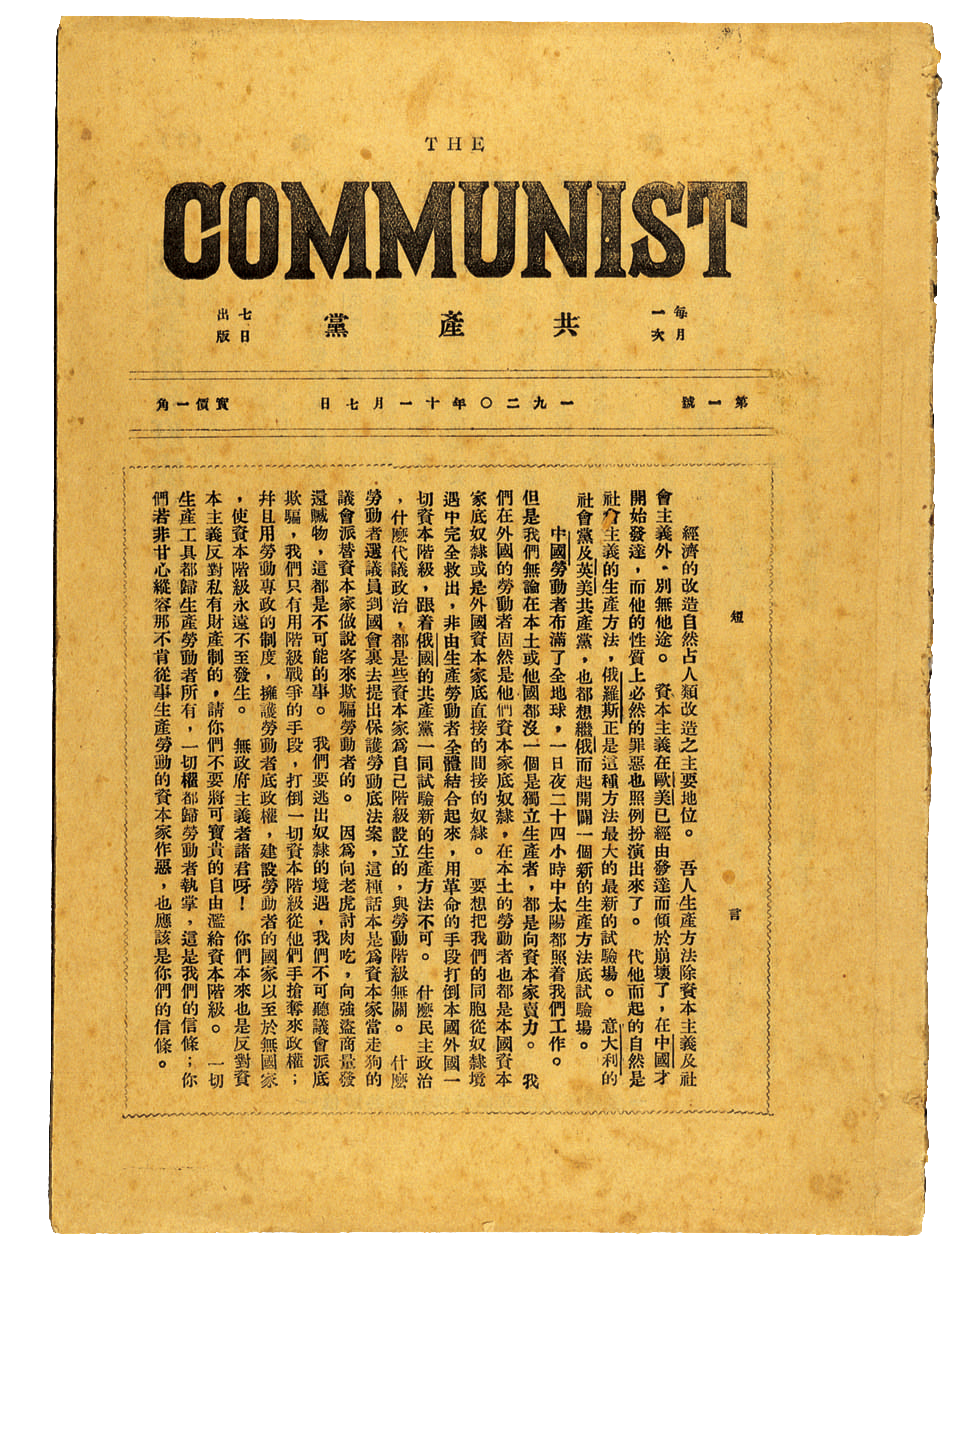 《共產黨》月刊第一期